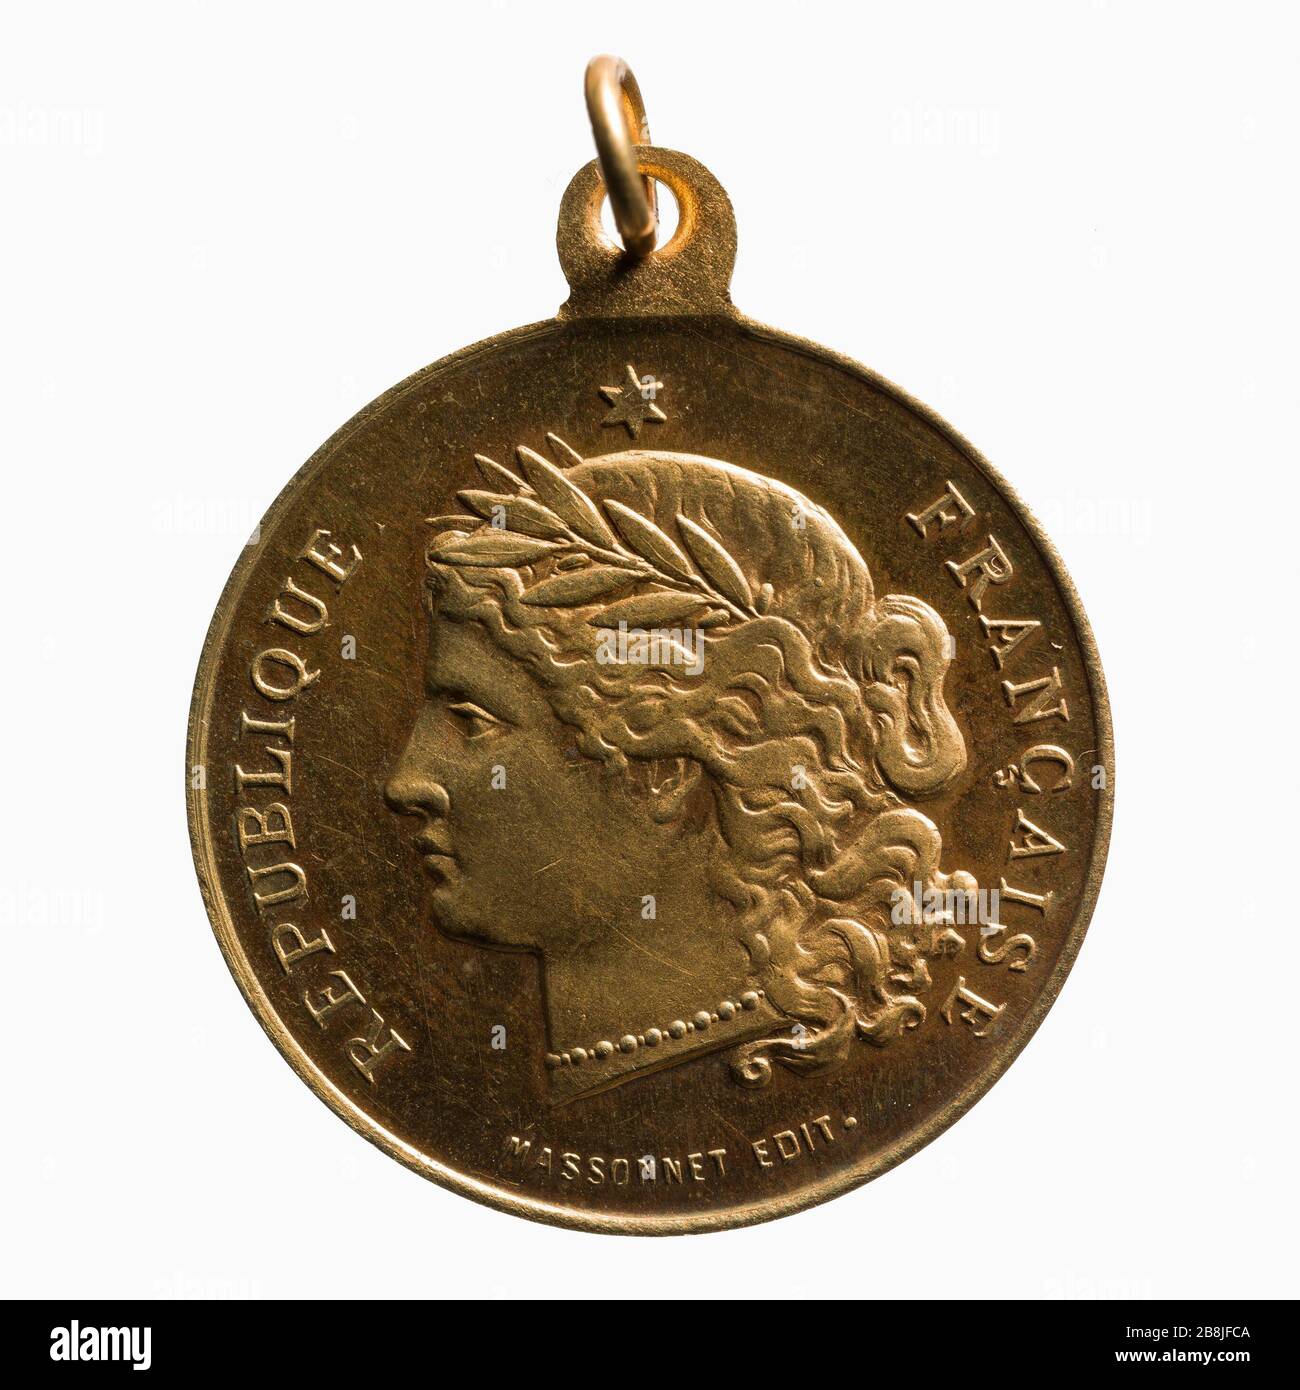 Festa Nazionale, 14 luglio 1881 Massonnet. Médaille commémorative de la Fête nationale, 14 juillet 1881. Parigi, musée Carnavalet. Foto Stock